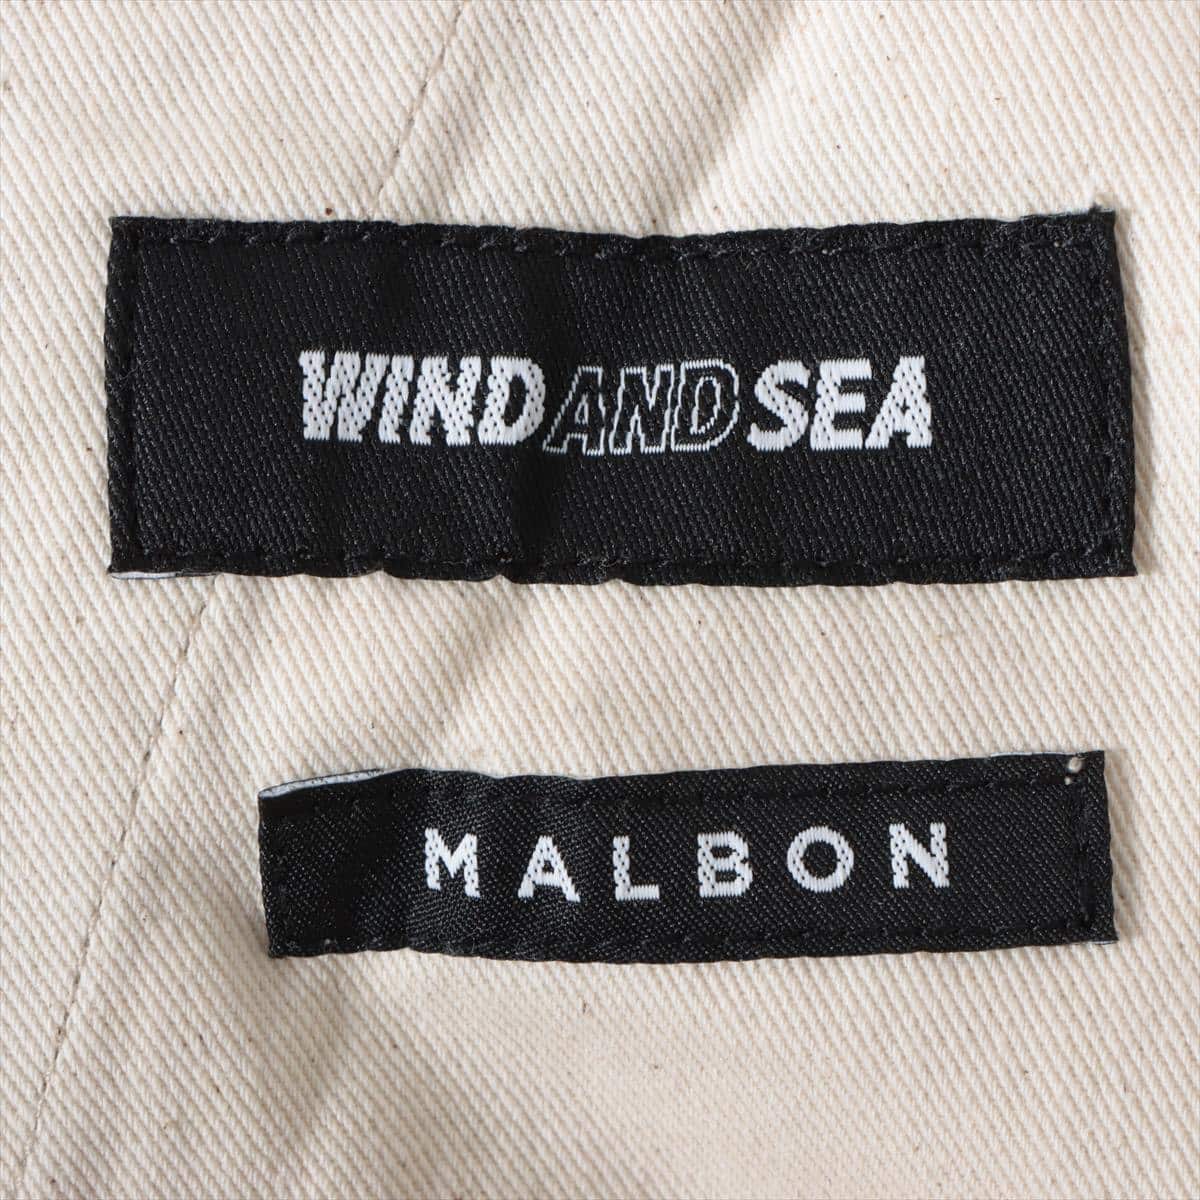 ウィンダンシー×マルボン コットン ショートパンツ S メンズ ベージュ  WDS-MALBON-13